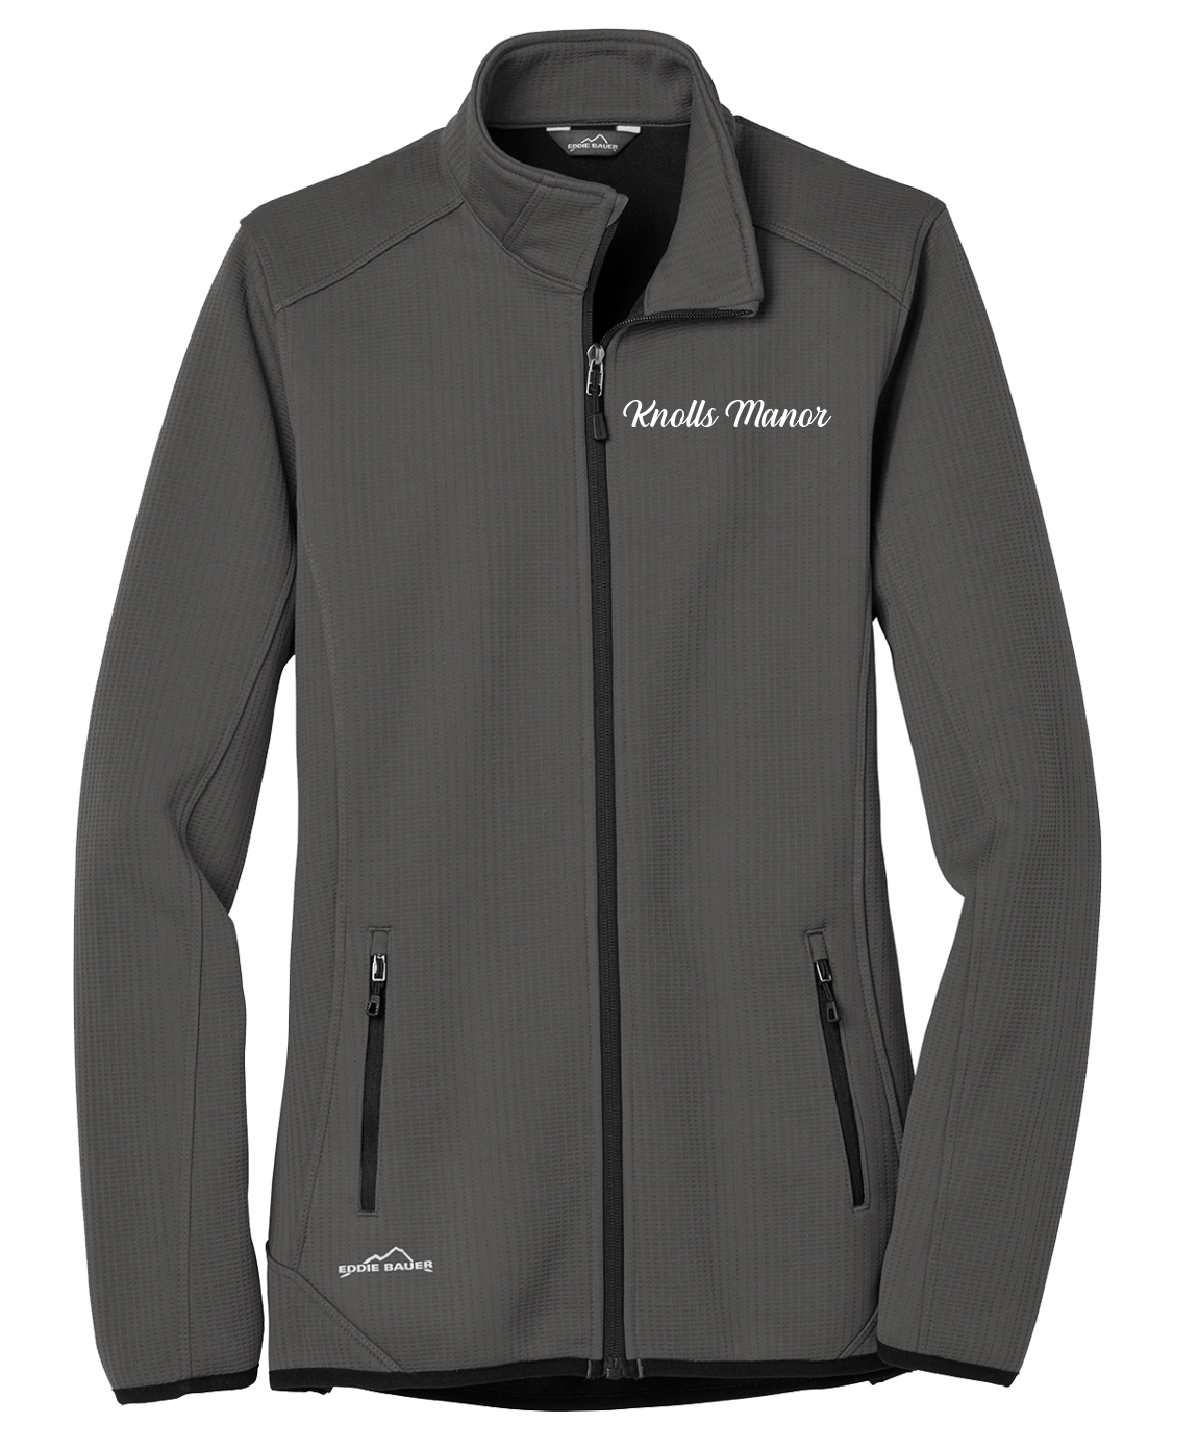 Knolls Manor  - Ladies - Eddie Bauer ® Dash Full-Zip Fleece Jacket